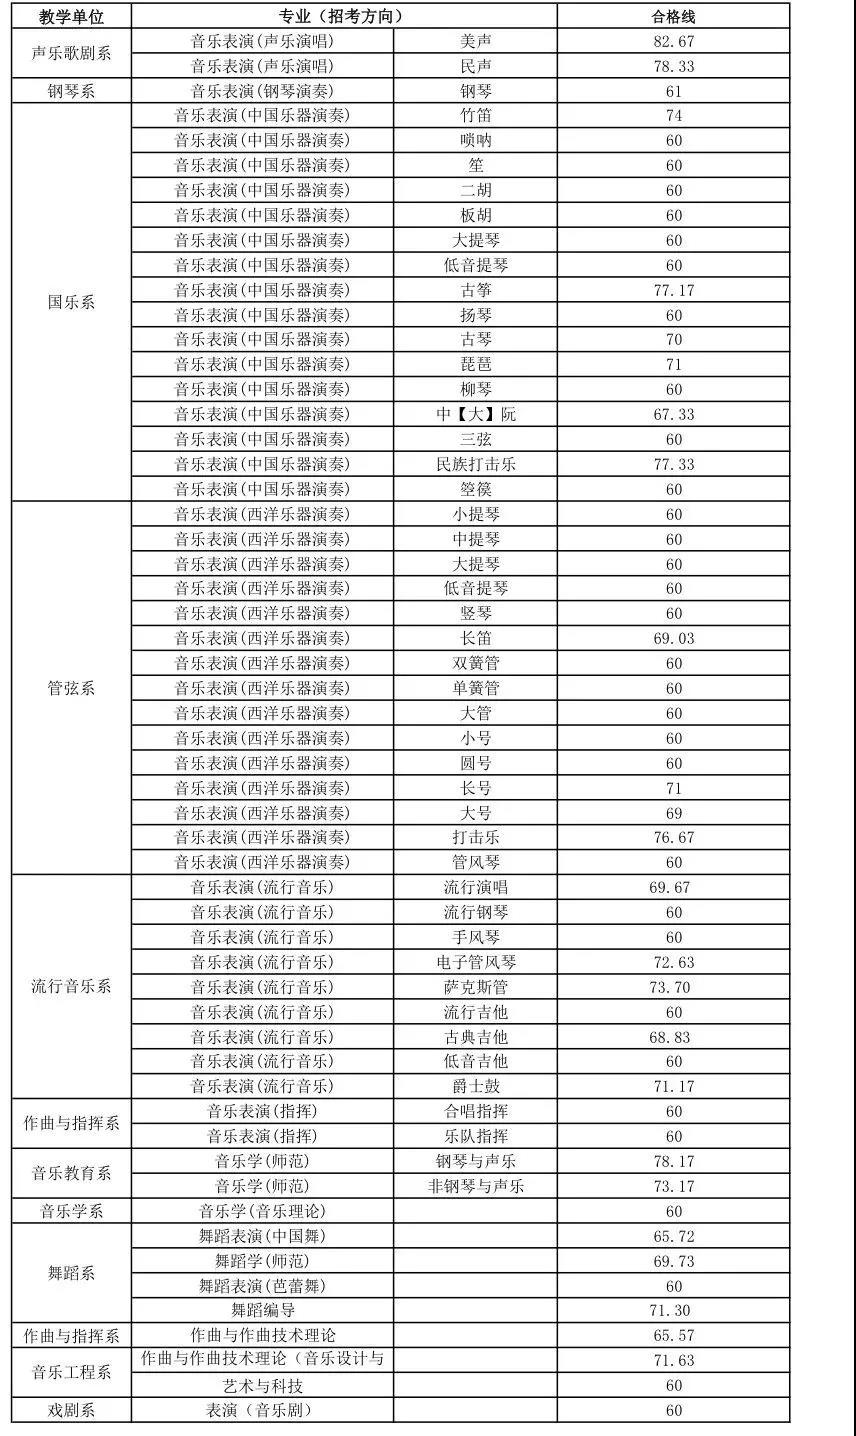 2019年浙江音乐学院校考初试合格分数线及合格考生名单